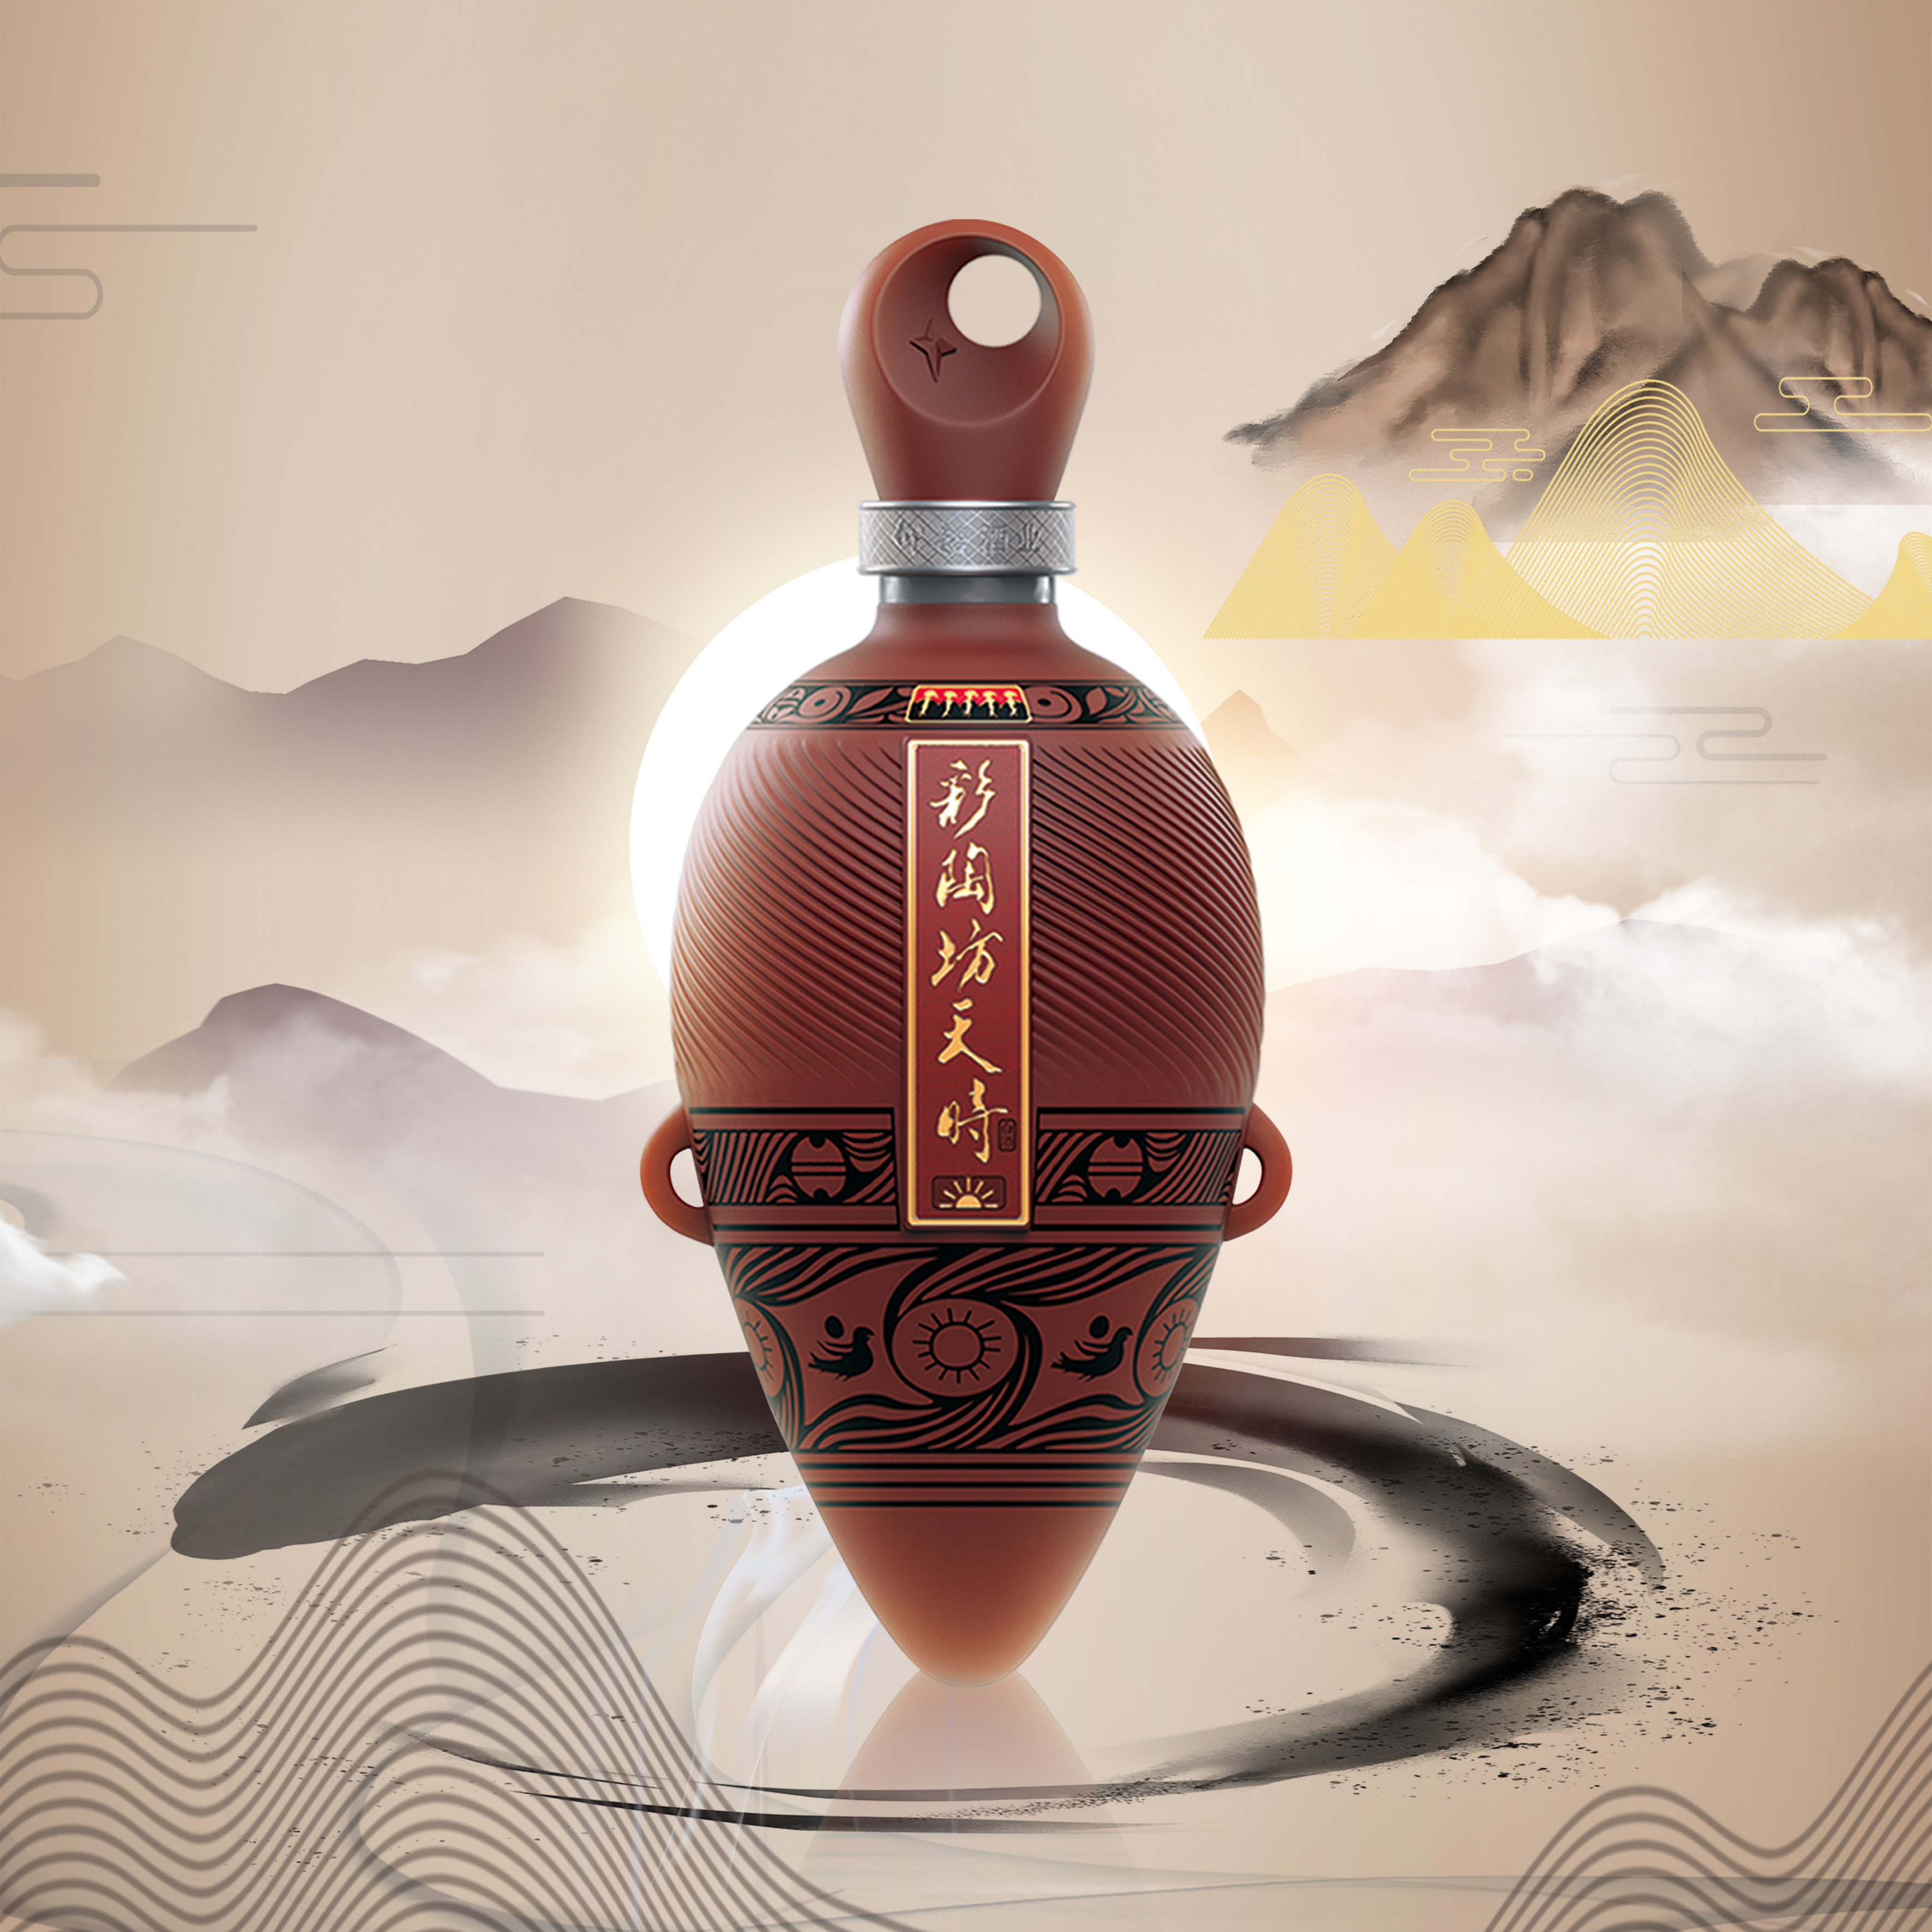 研究考证 小口尖底瓶是仰韶先民的酒具